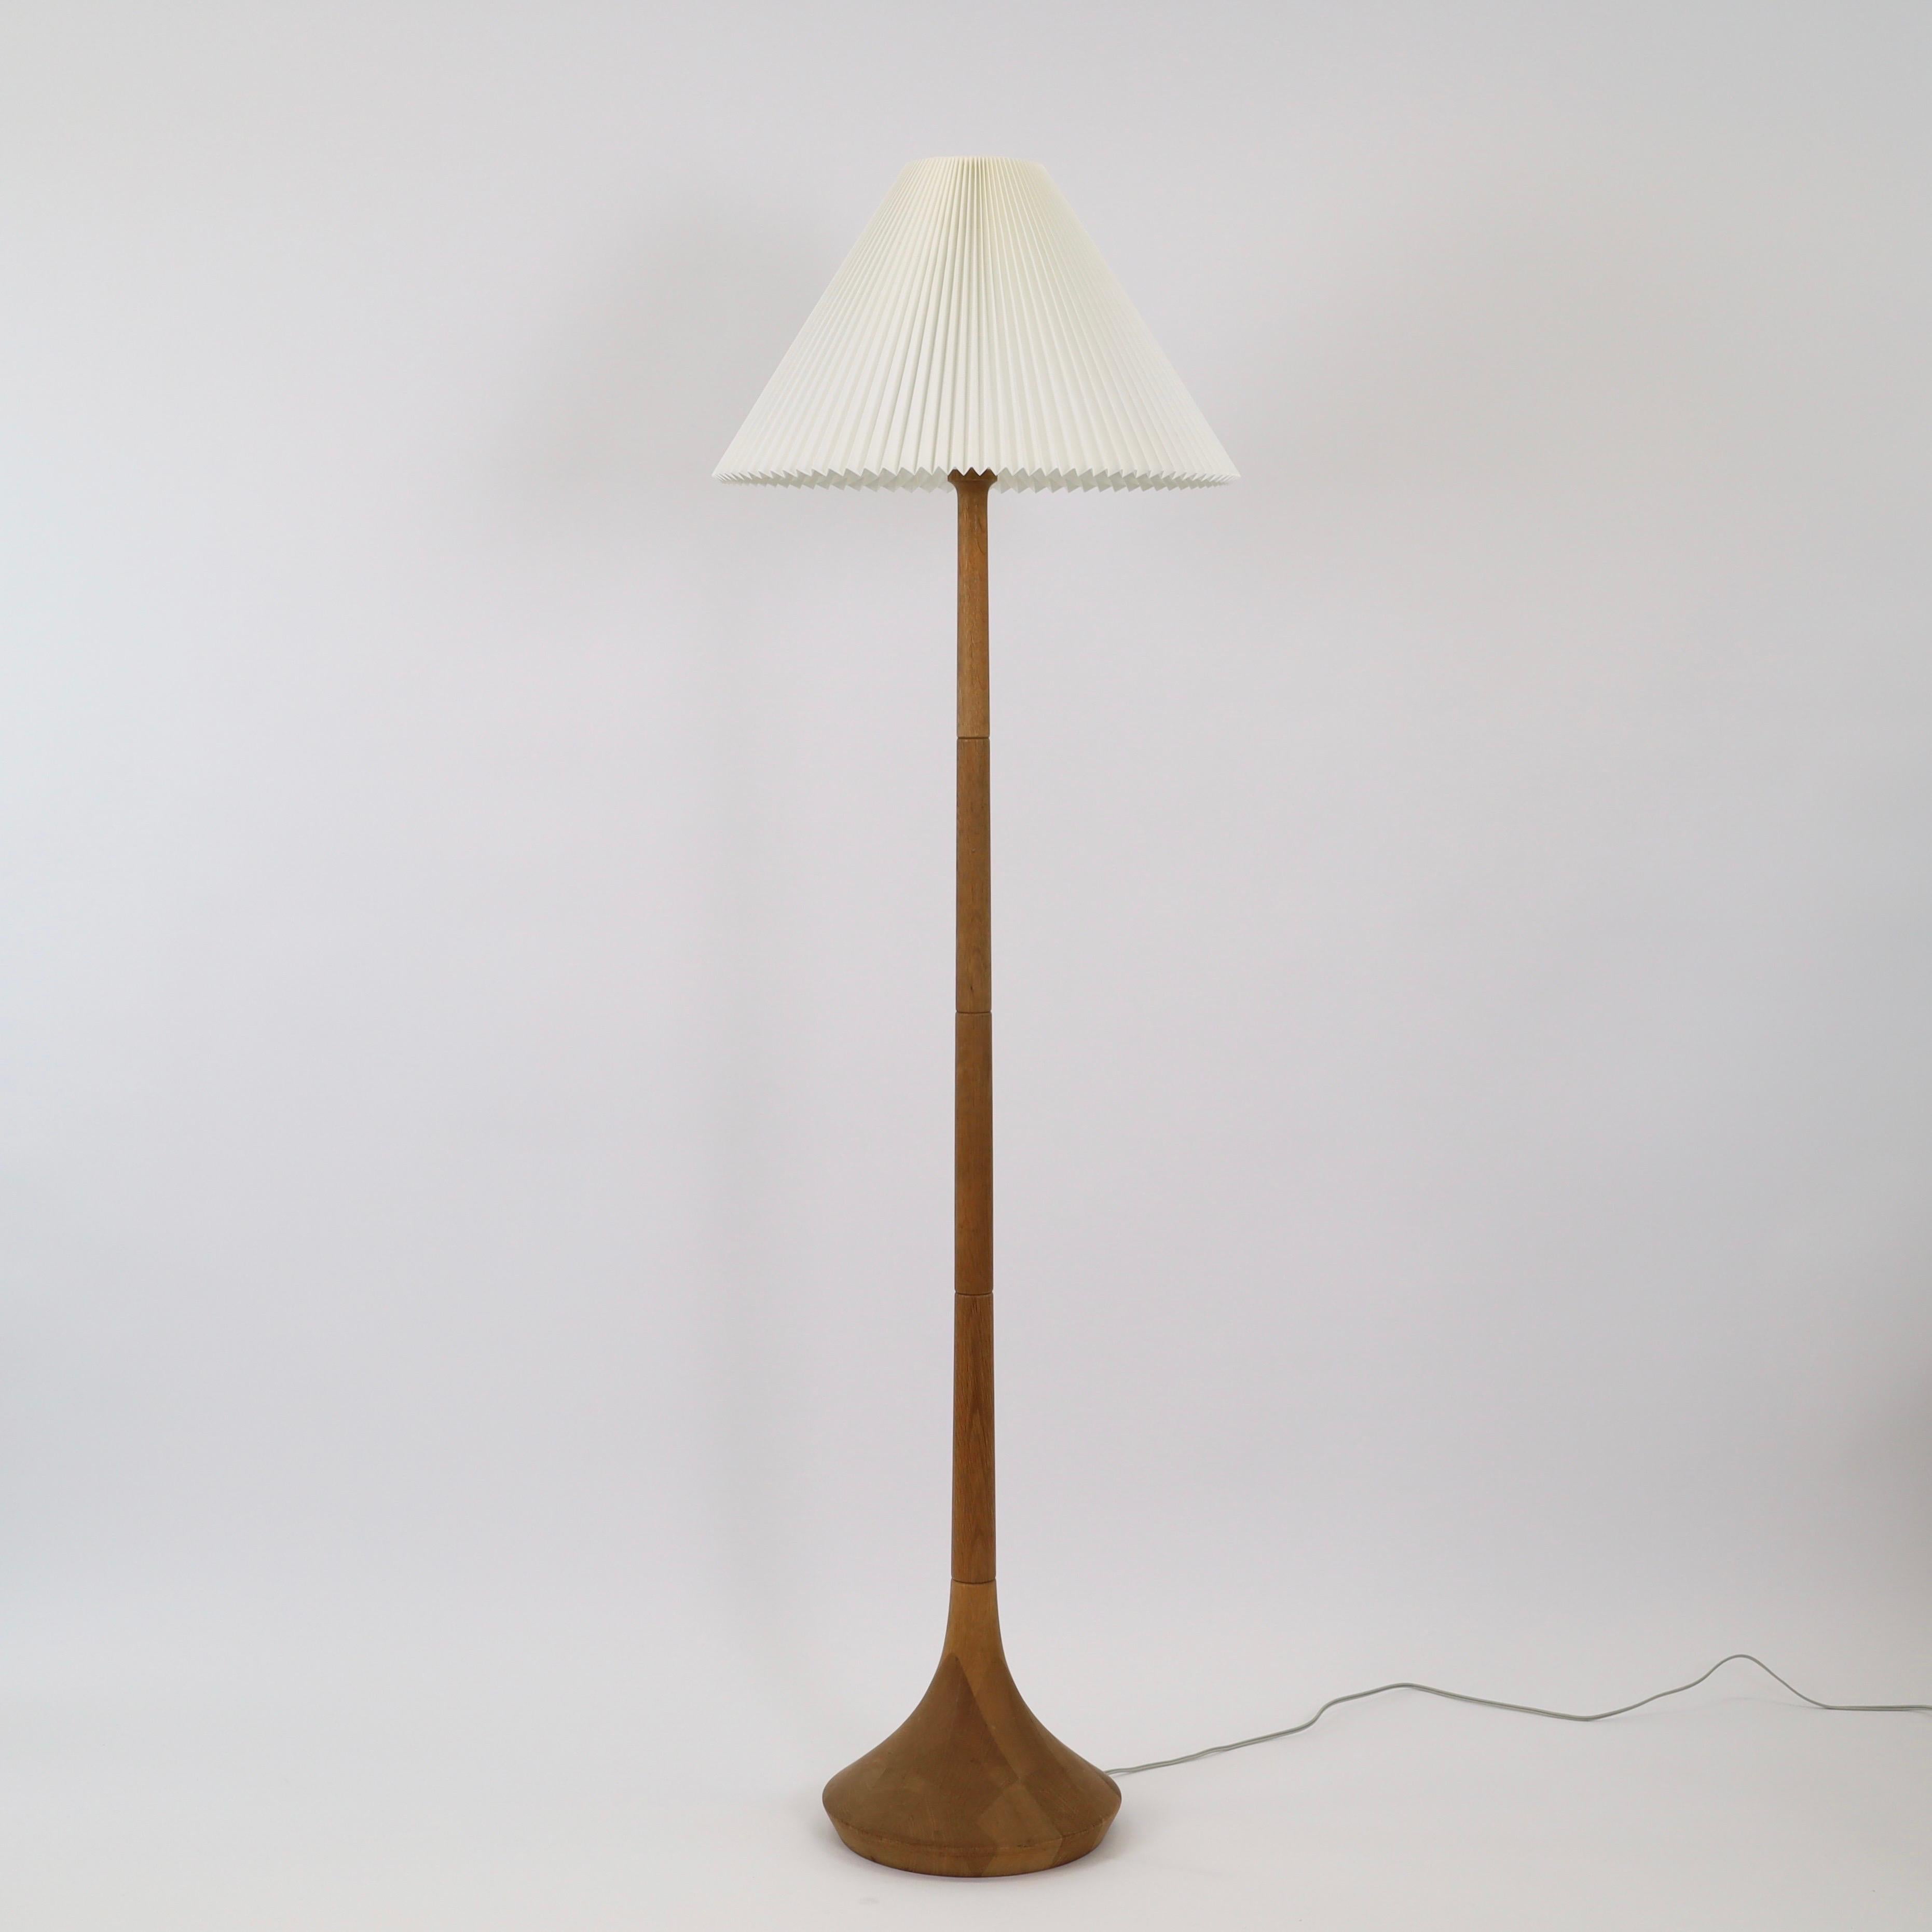 Stehleuchte aus Eichenholz, entworfen von Lisbeth Brams für Brdr. Krüger in den 1960er Jahren mit einem Lampenschirm von Le Klint. Ein modernes Stück der dänischen Designerin und Beispiel für ihre außergewöhnliche Fähigkeit, zeitlose Lampen zu